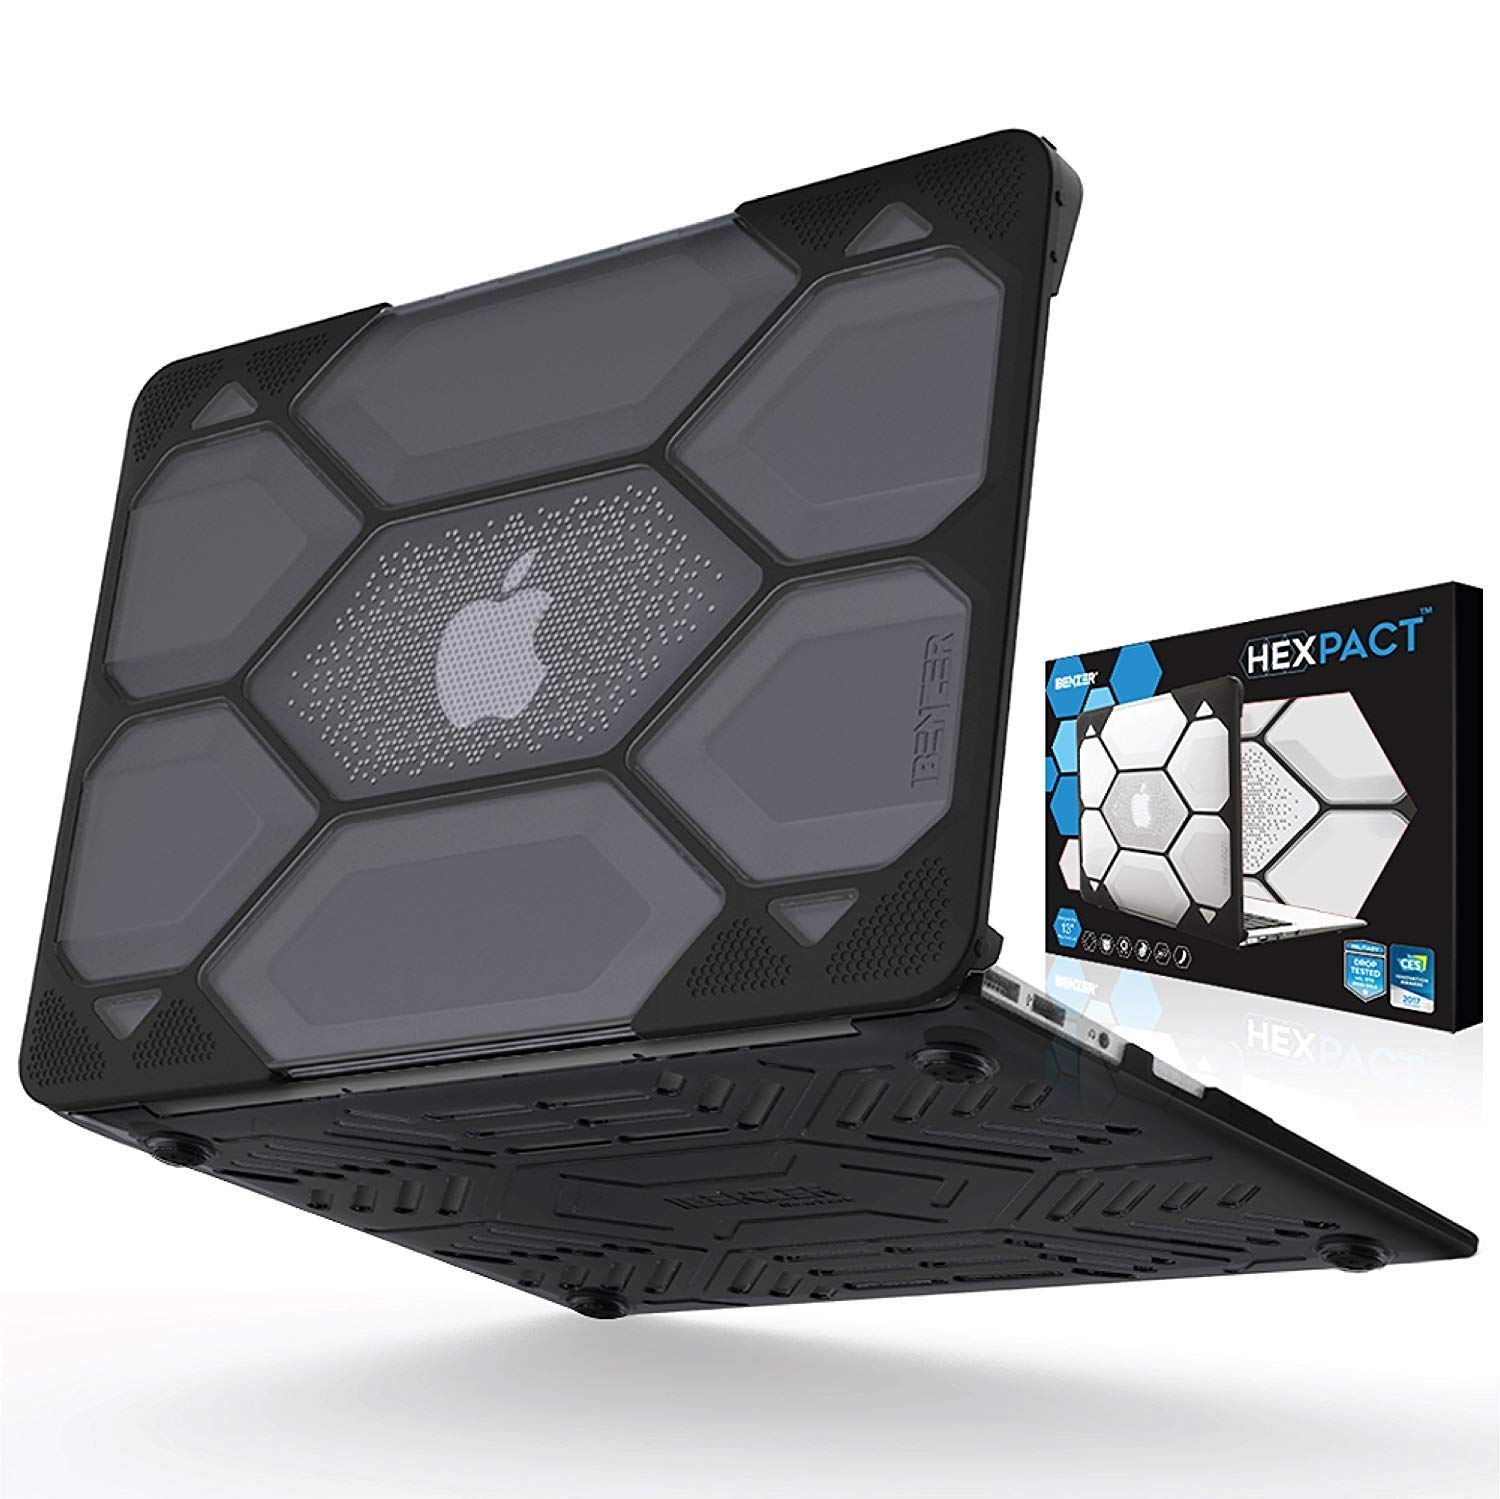 Funda protectora para MacBook Air Hexpact de 13 pulgadas, estuche rígido de protección de alta resistencia para Apple MacBook Air 13 A1369 A1466